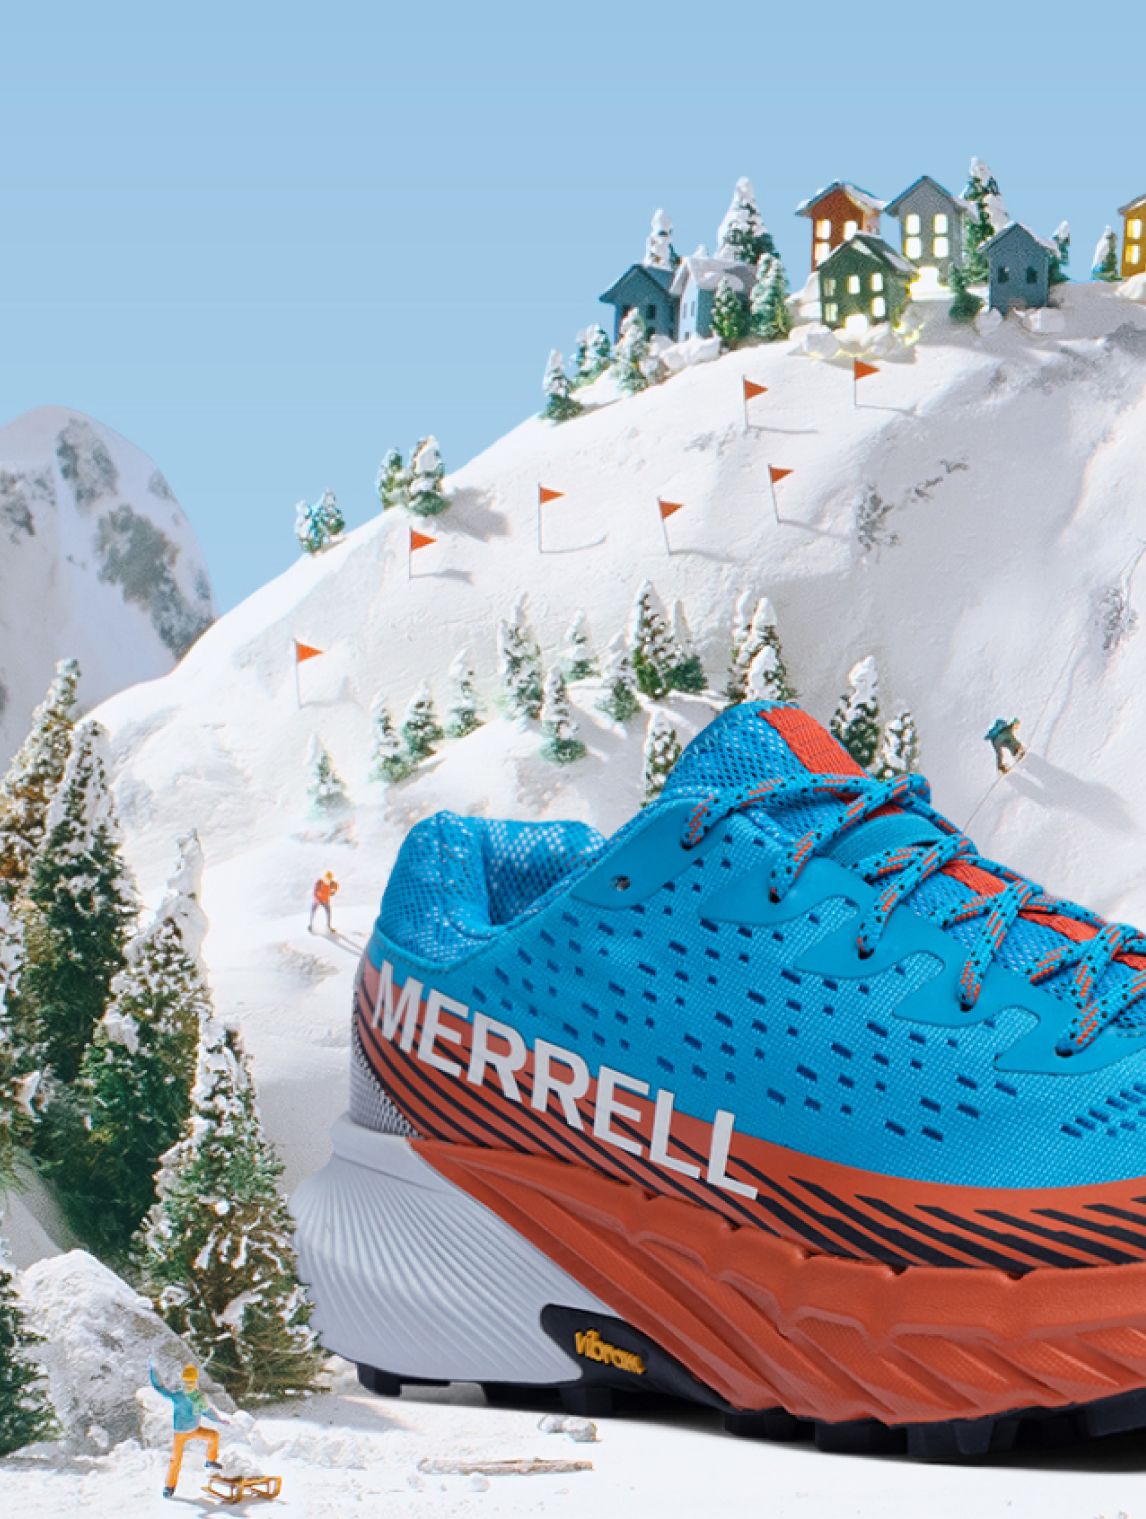 Une chaussure Merrell bleue et orange sur une montagne enneigée.